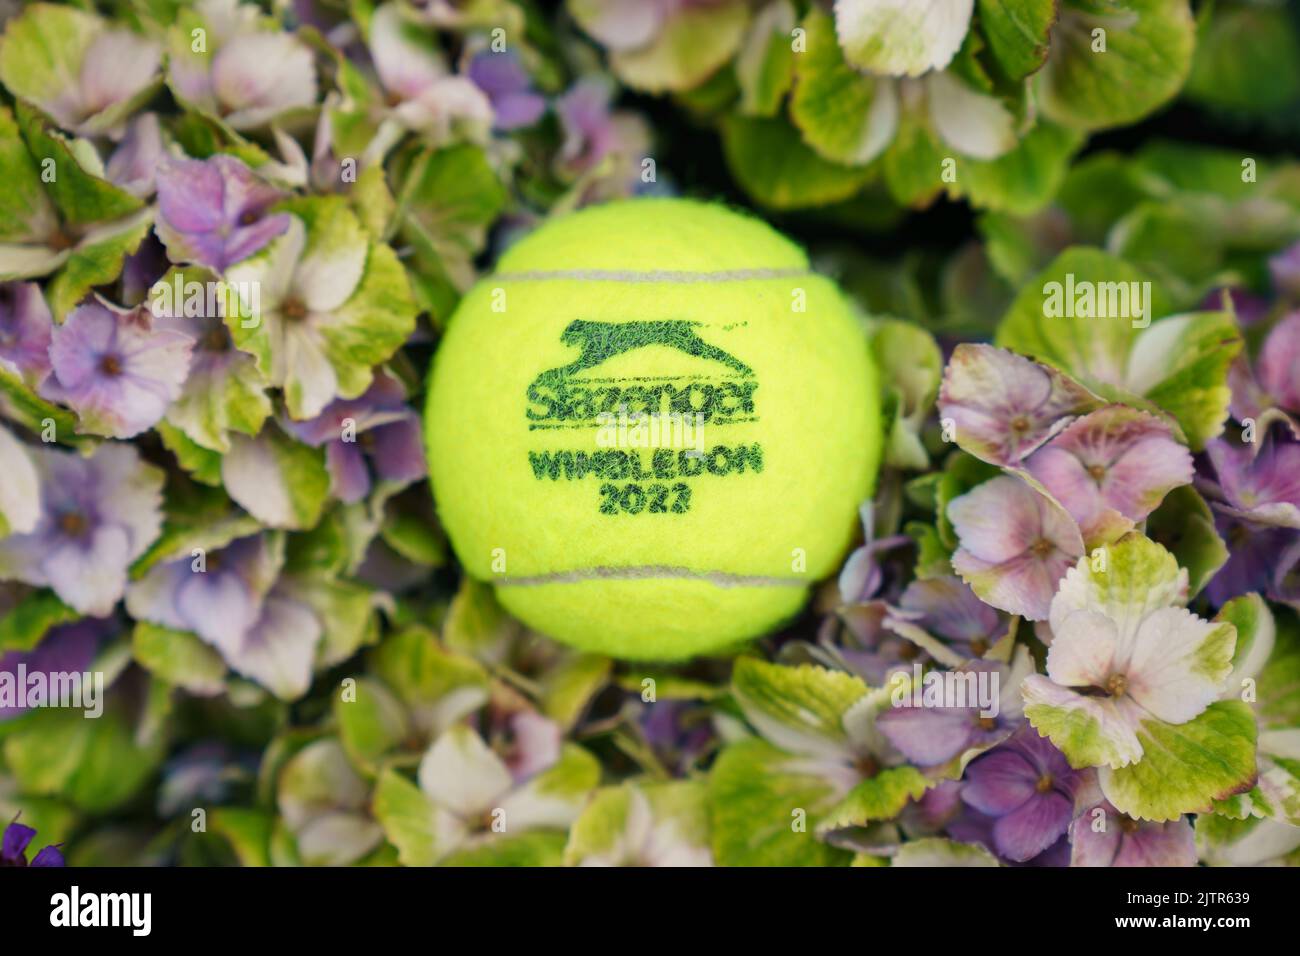 Wimbledon 2022 Tennisball im Turnier Hydragea Blumen vor Ort gefunden Stockfoto